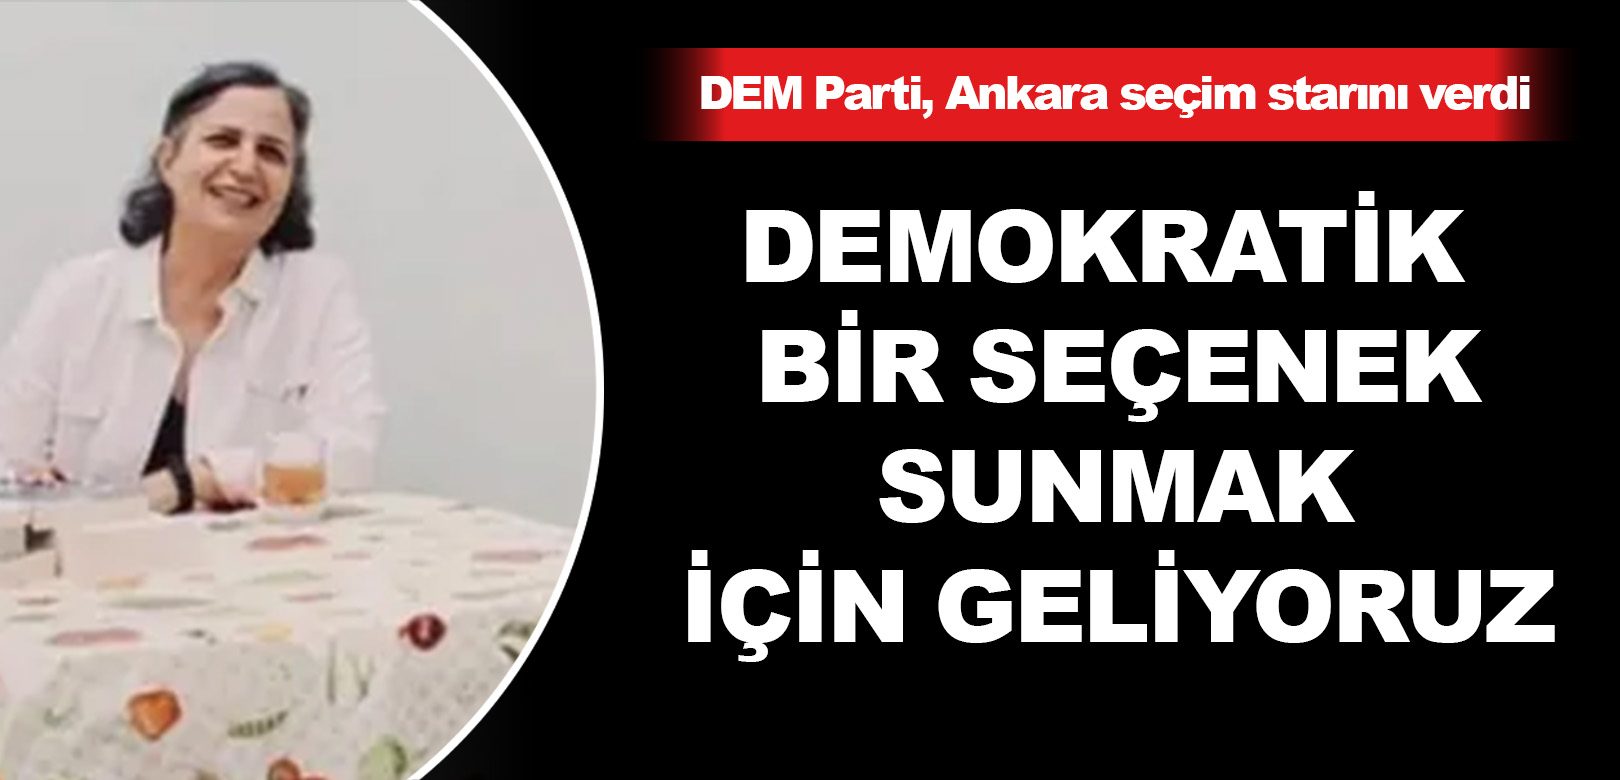 DEM Parti, Ankara seçim startını verdi: Demokratik bir seçenek sunmak için geliyoruz